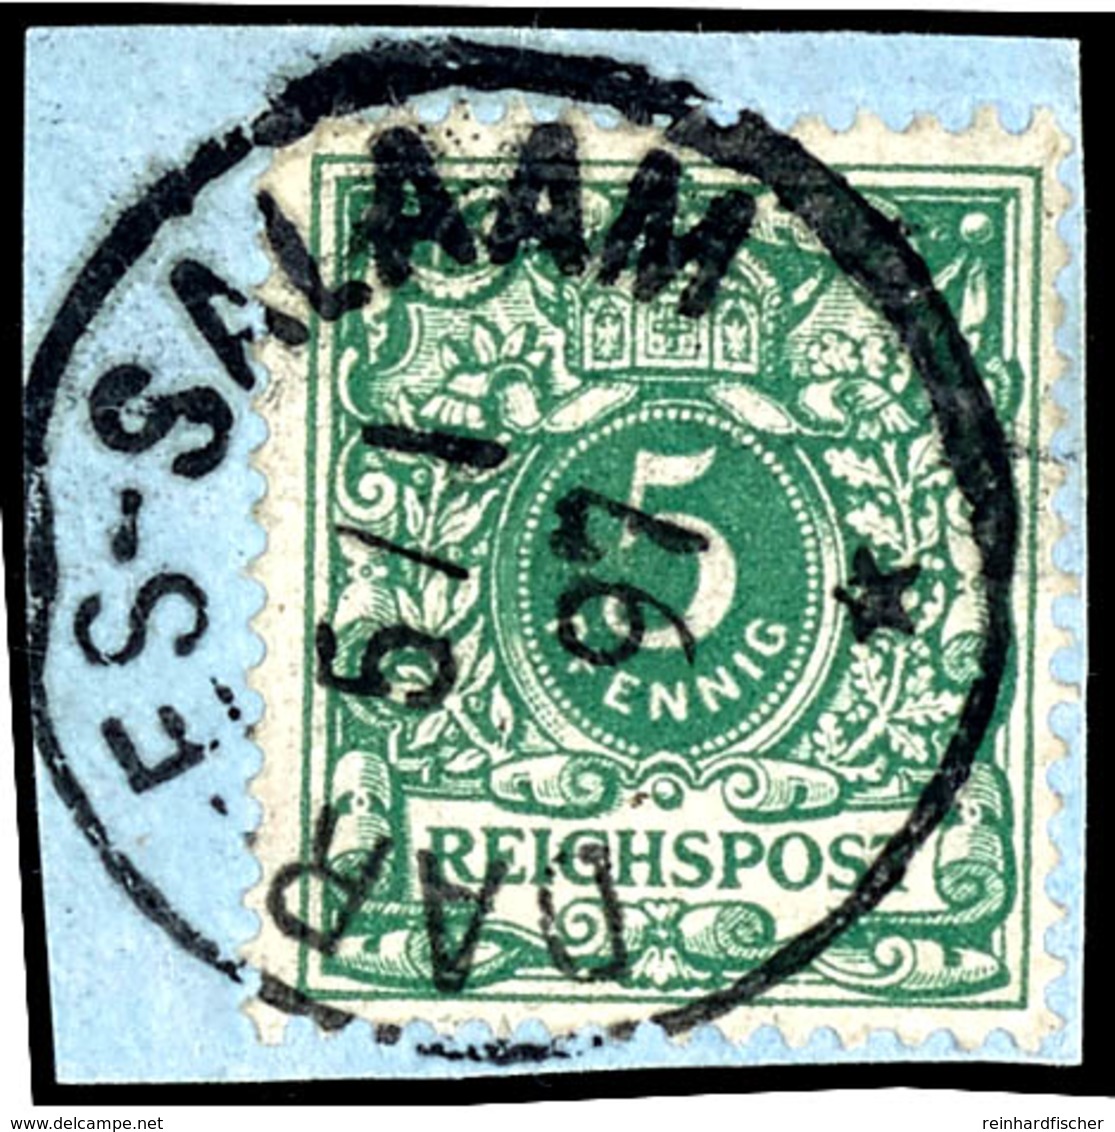 5 Pfg. Grün, Gestempelt "DAR-ES SALAM 5/1 97" Auf Briefstück., Katalog: M46c BS - German East Africa